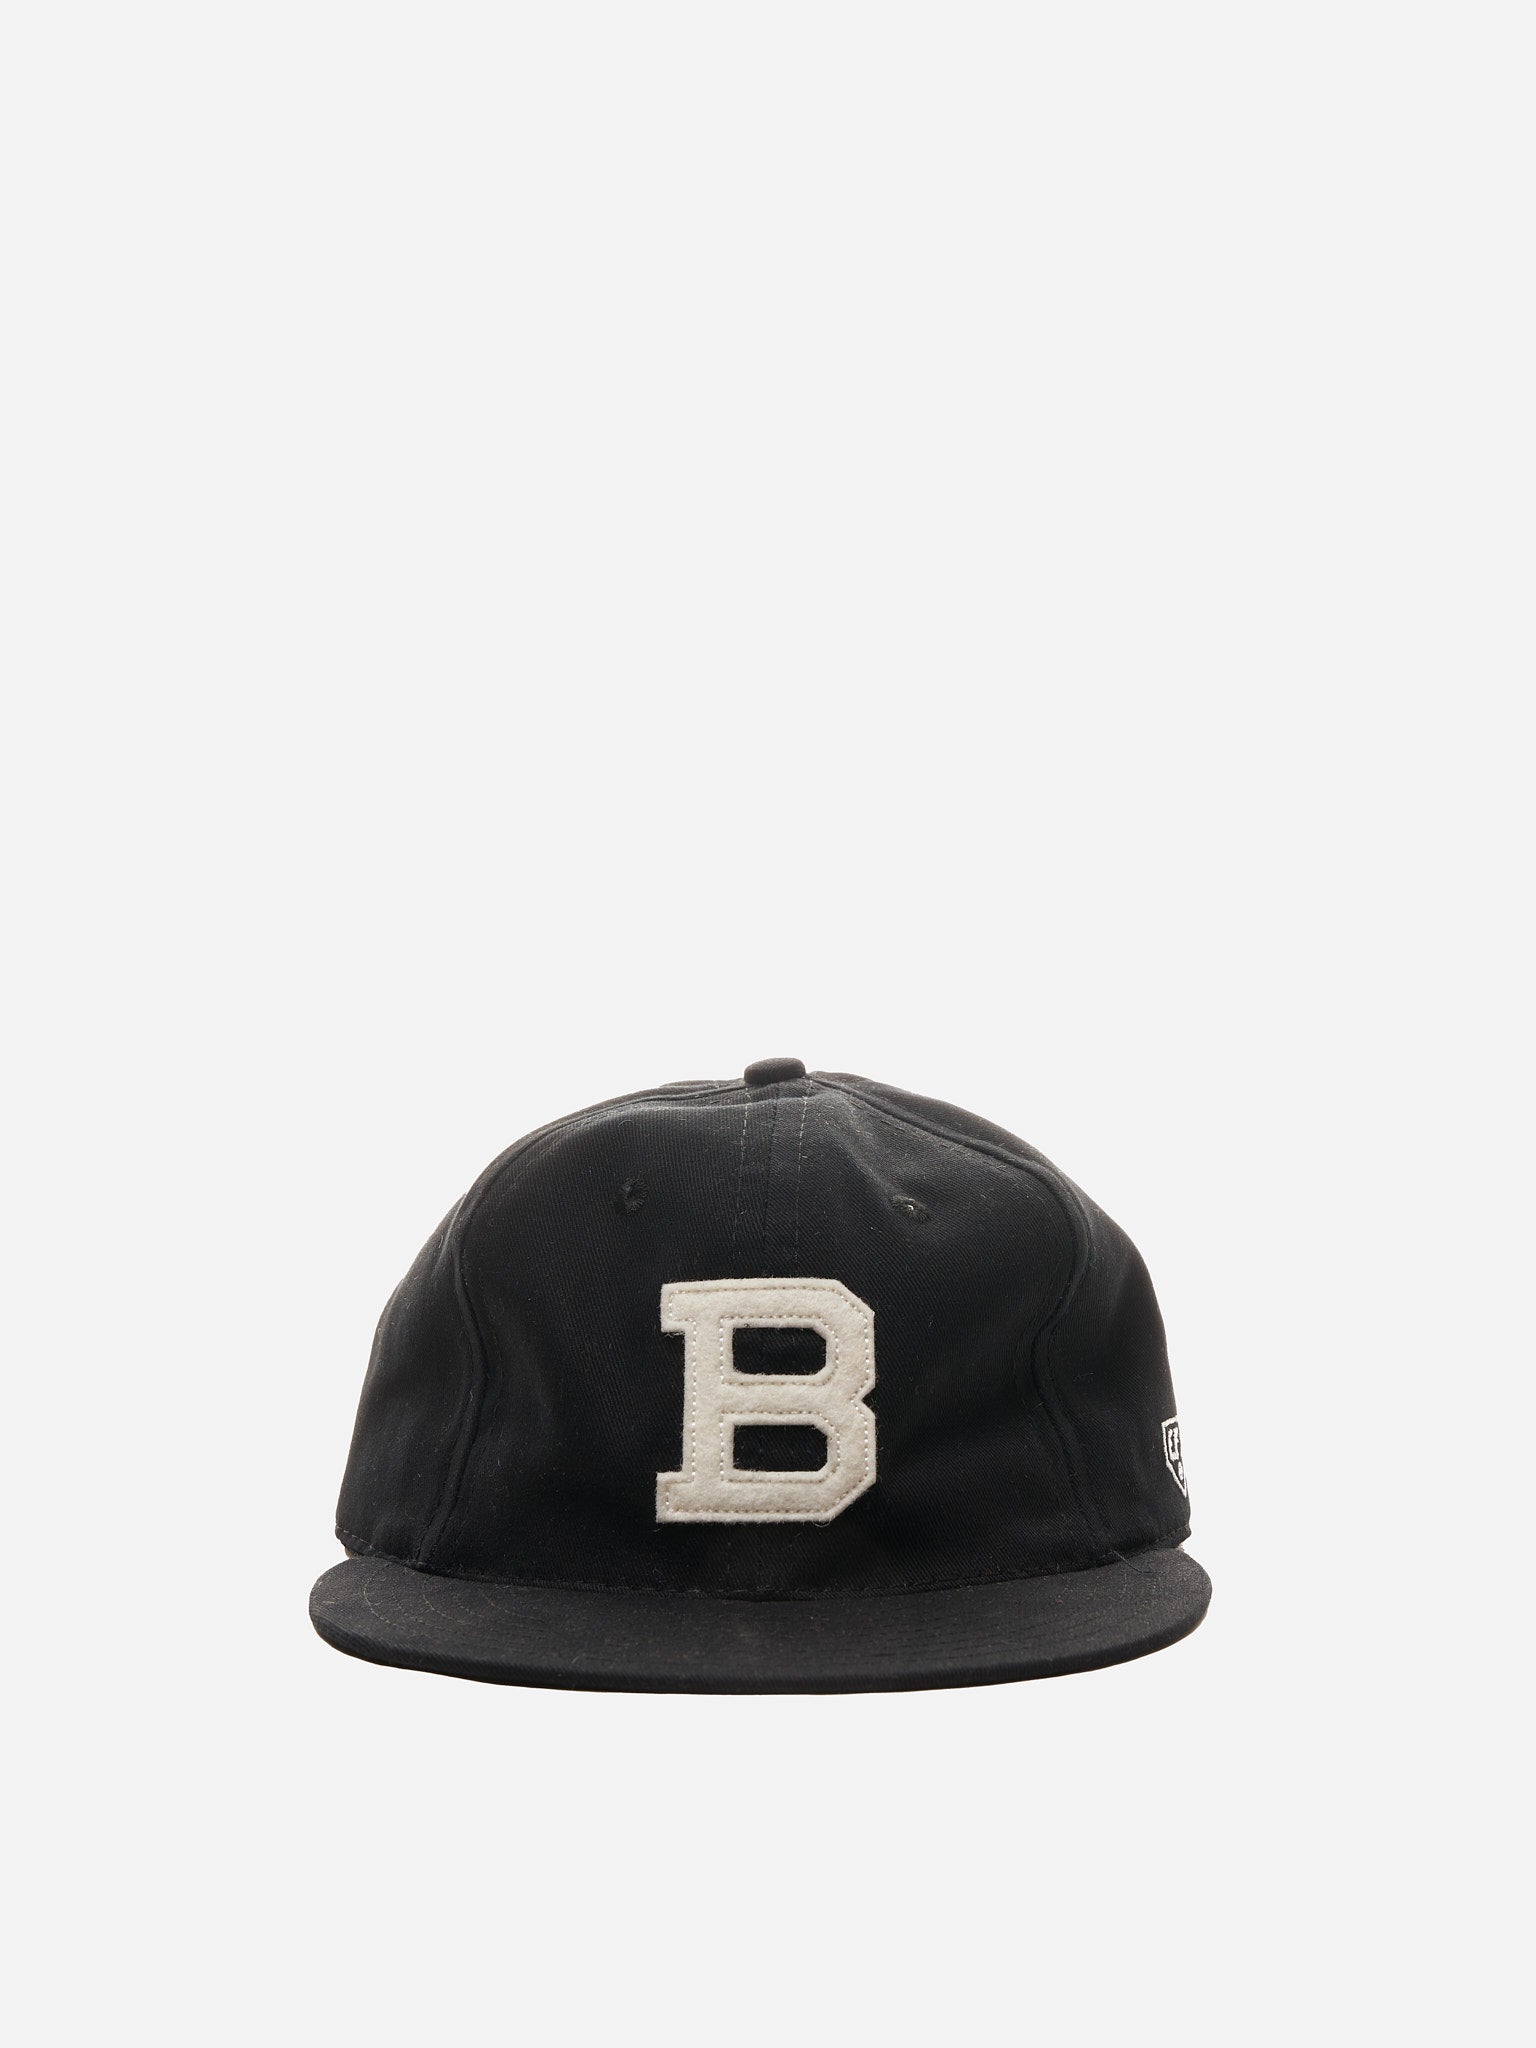 Ebbets Field Flannels Brooklyn Bushwicks Vintage Inspired Ballcap